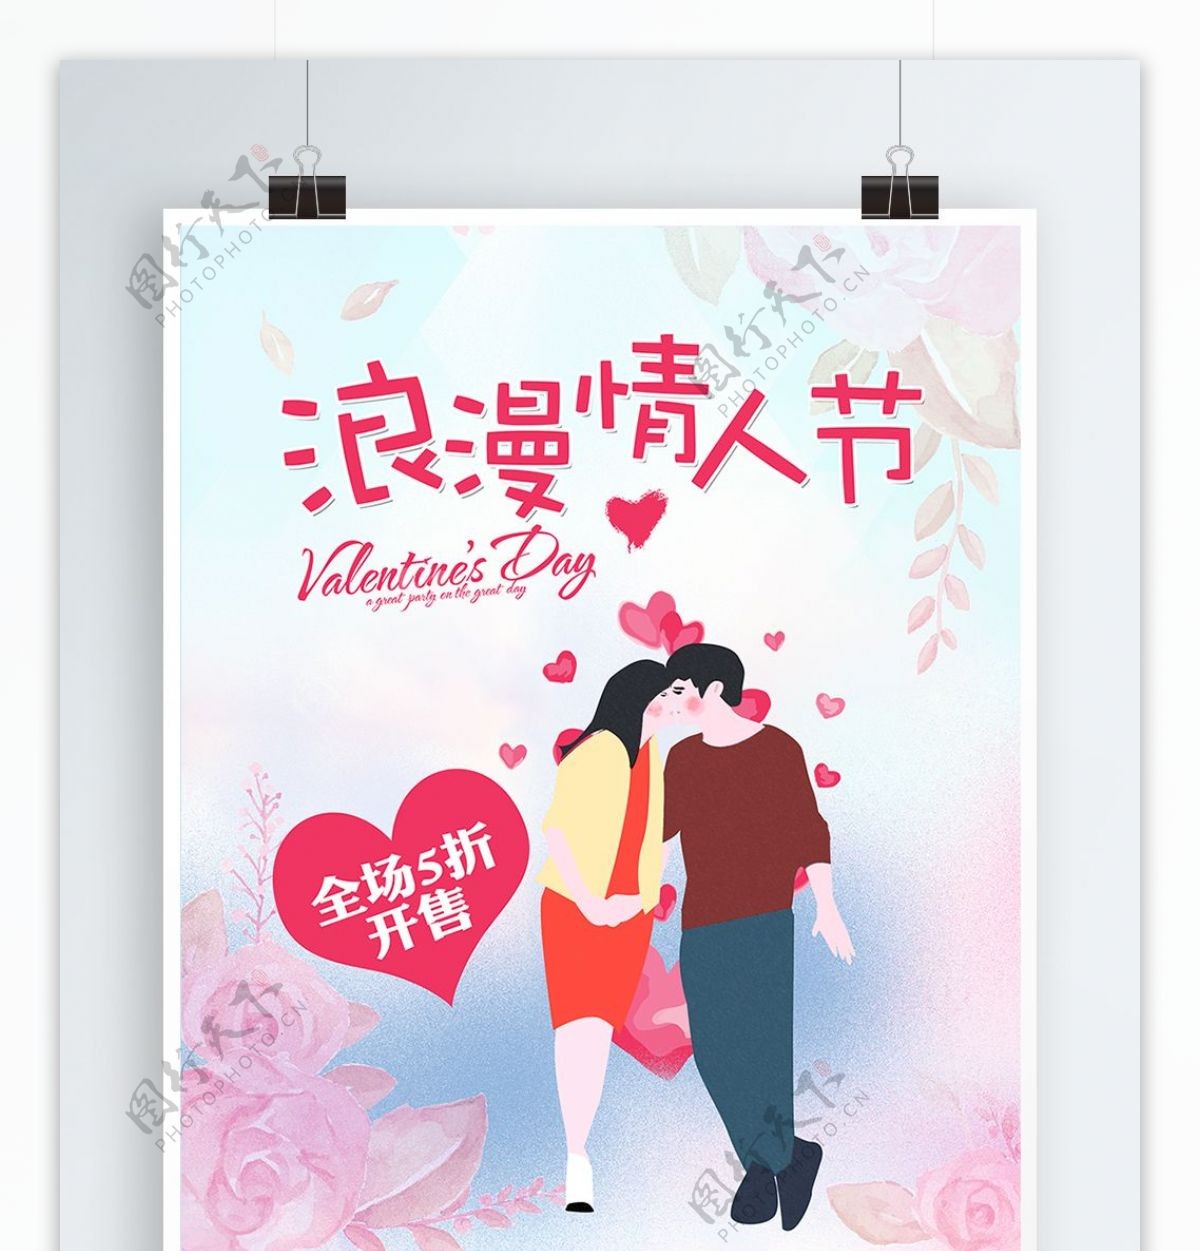 原创插画浪漫情人节商场促销海报